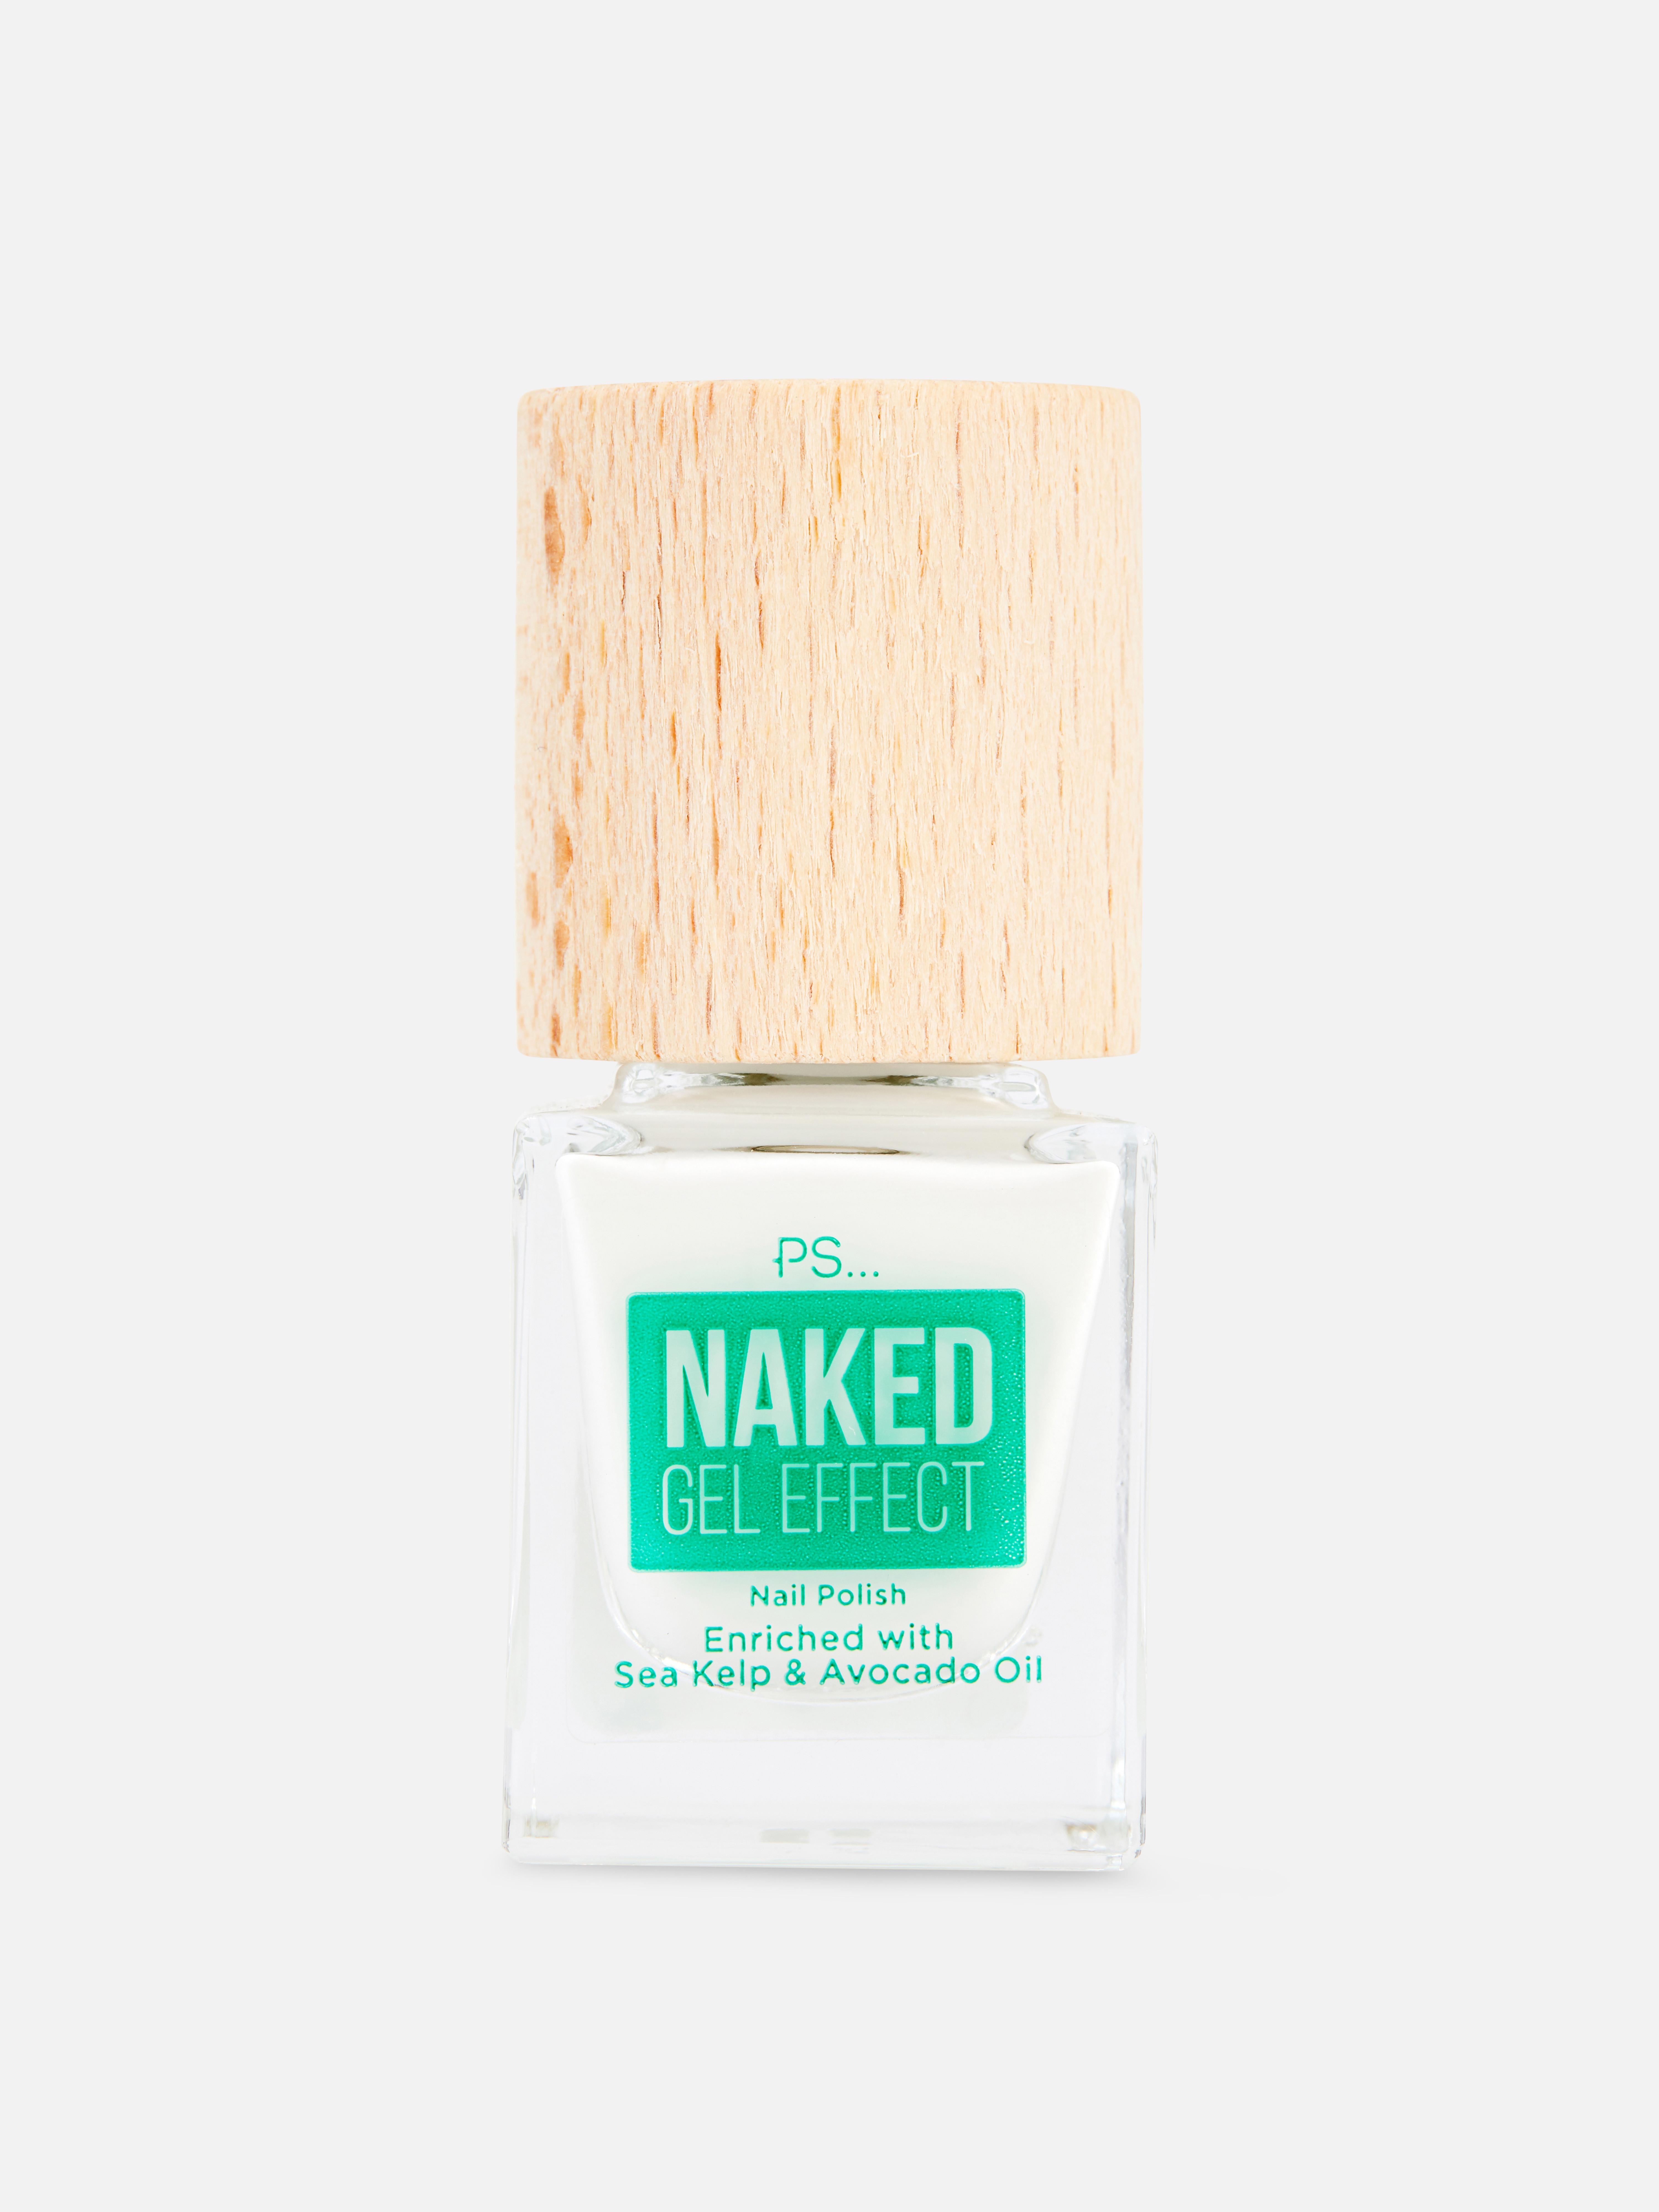 PS... Naked Gel Effect Nail Polish